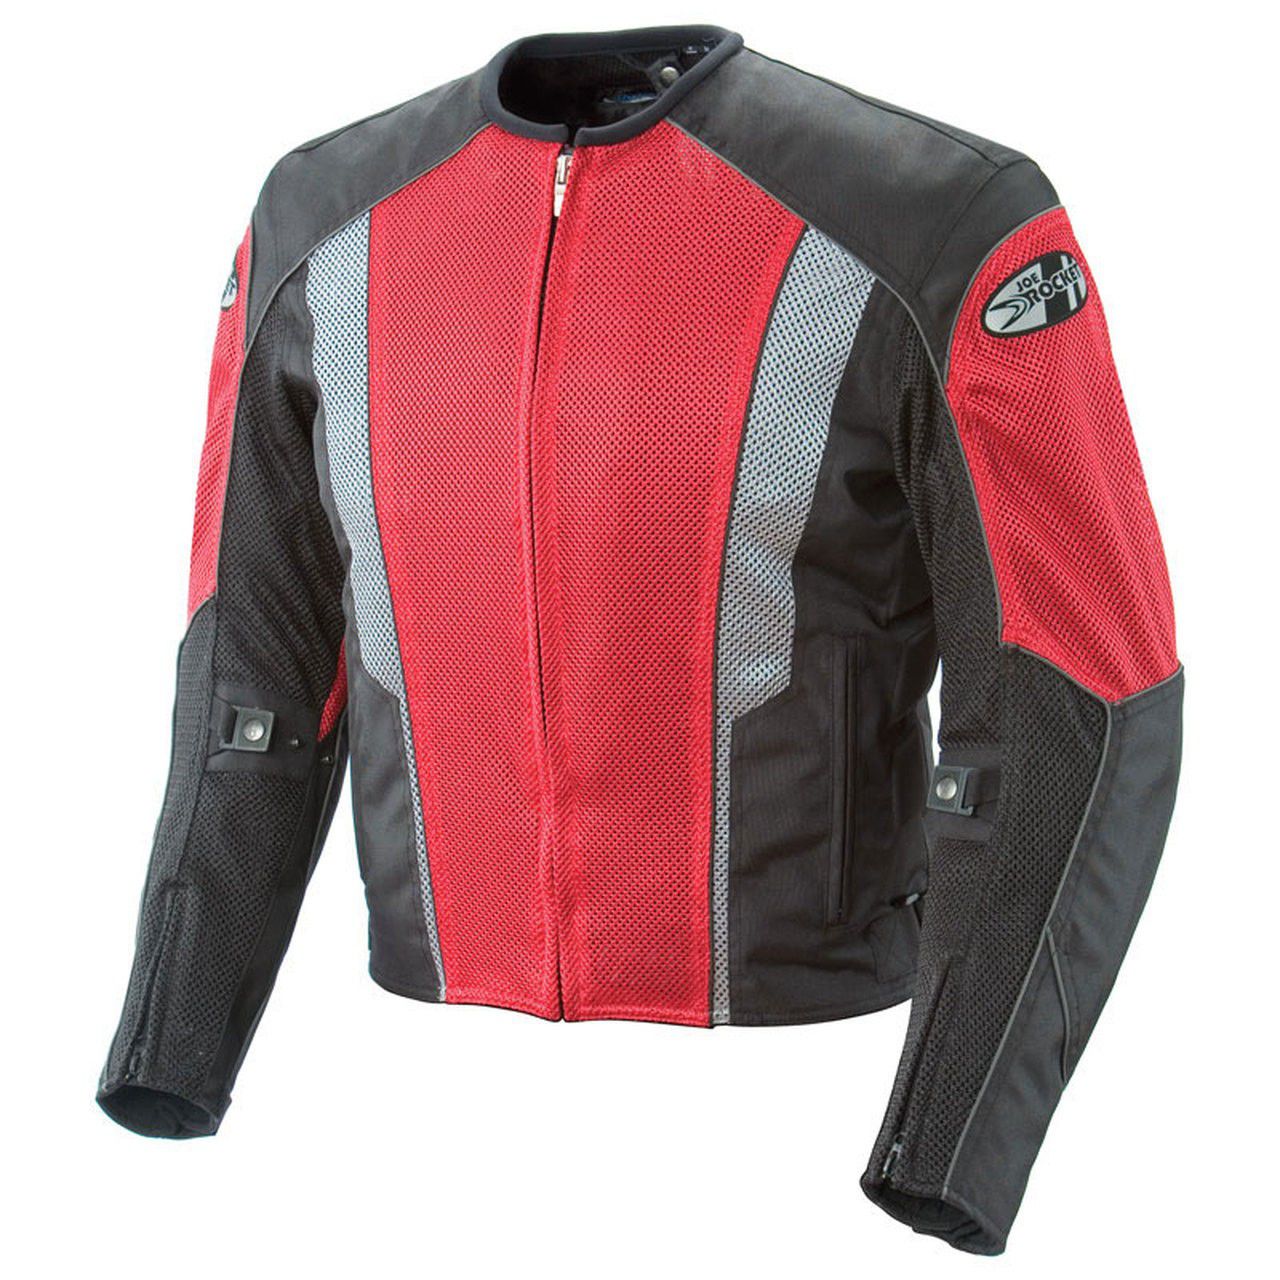 Joe Rocket motorcycle jacket & pants